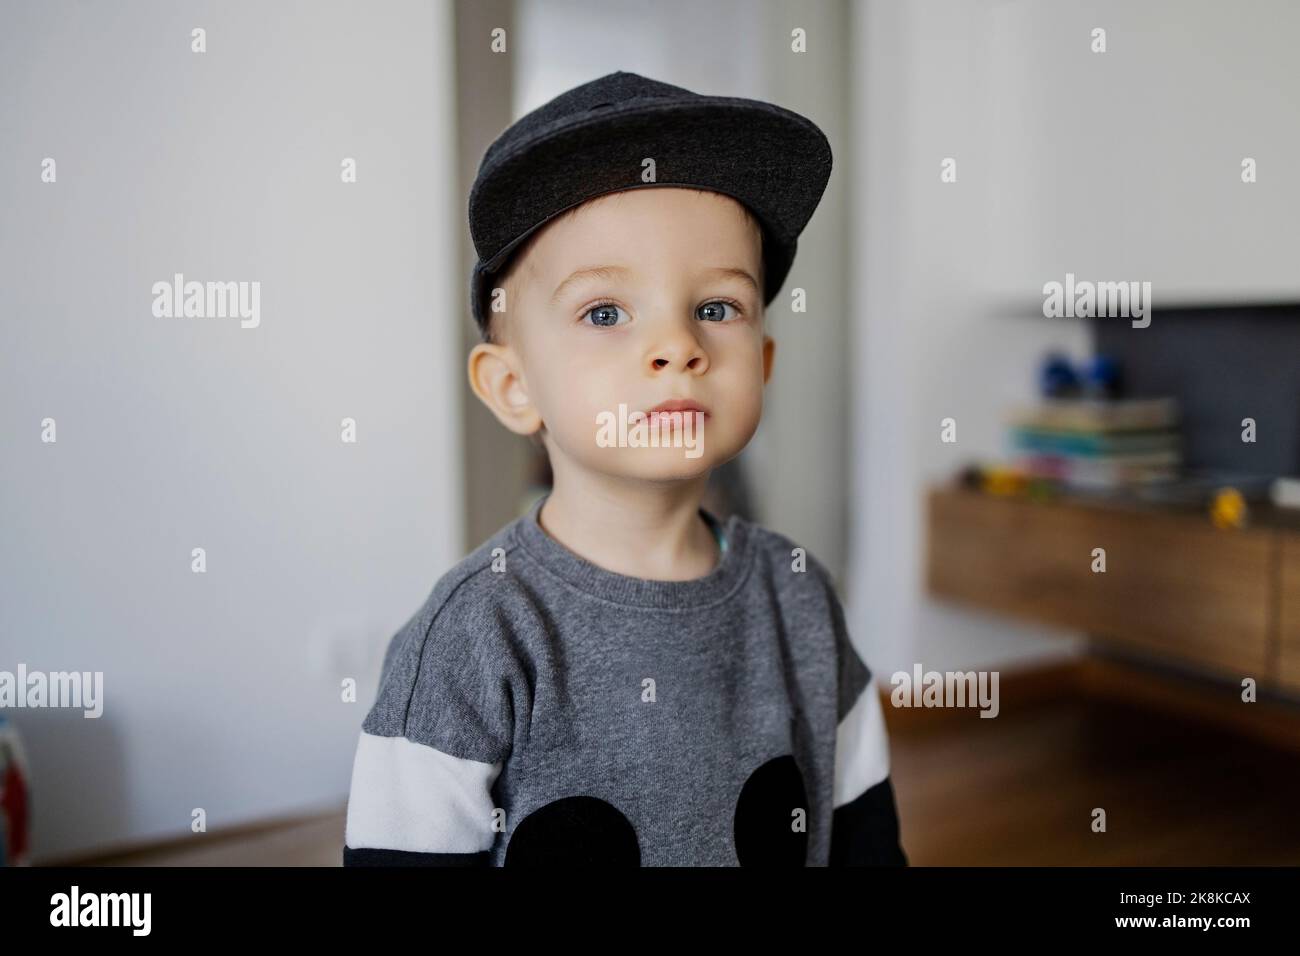 Portrait d'un bébé garçon. Un mignon petit garçon dans un sweat-shirt et un chapeau est regarder depuis l'espace intérieur latéral de la maison. Le garçon a un visage vague Banque D'Images